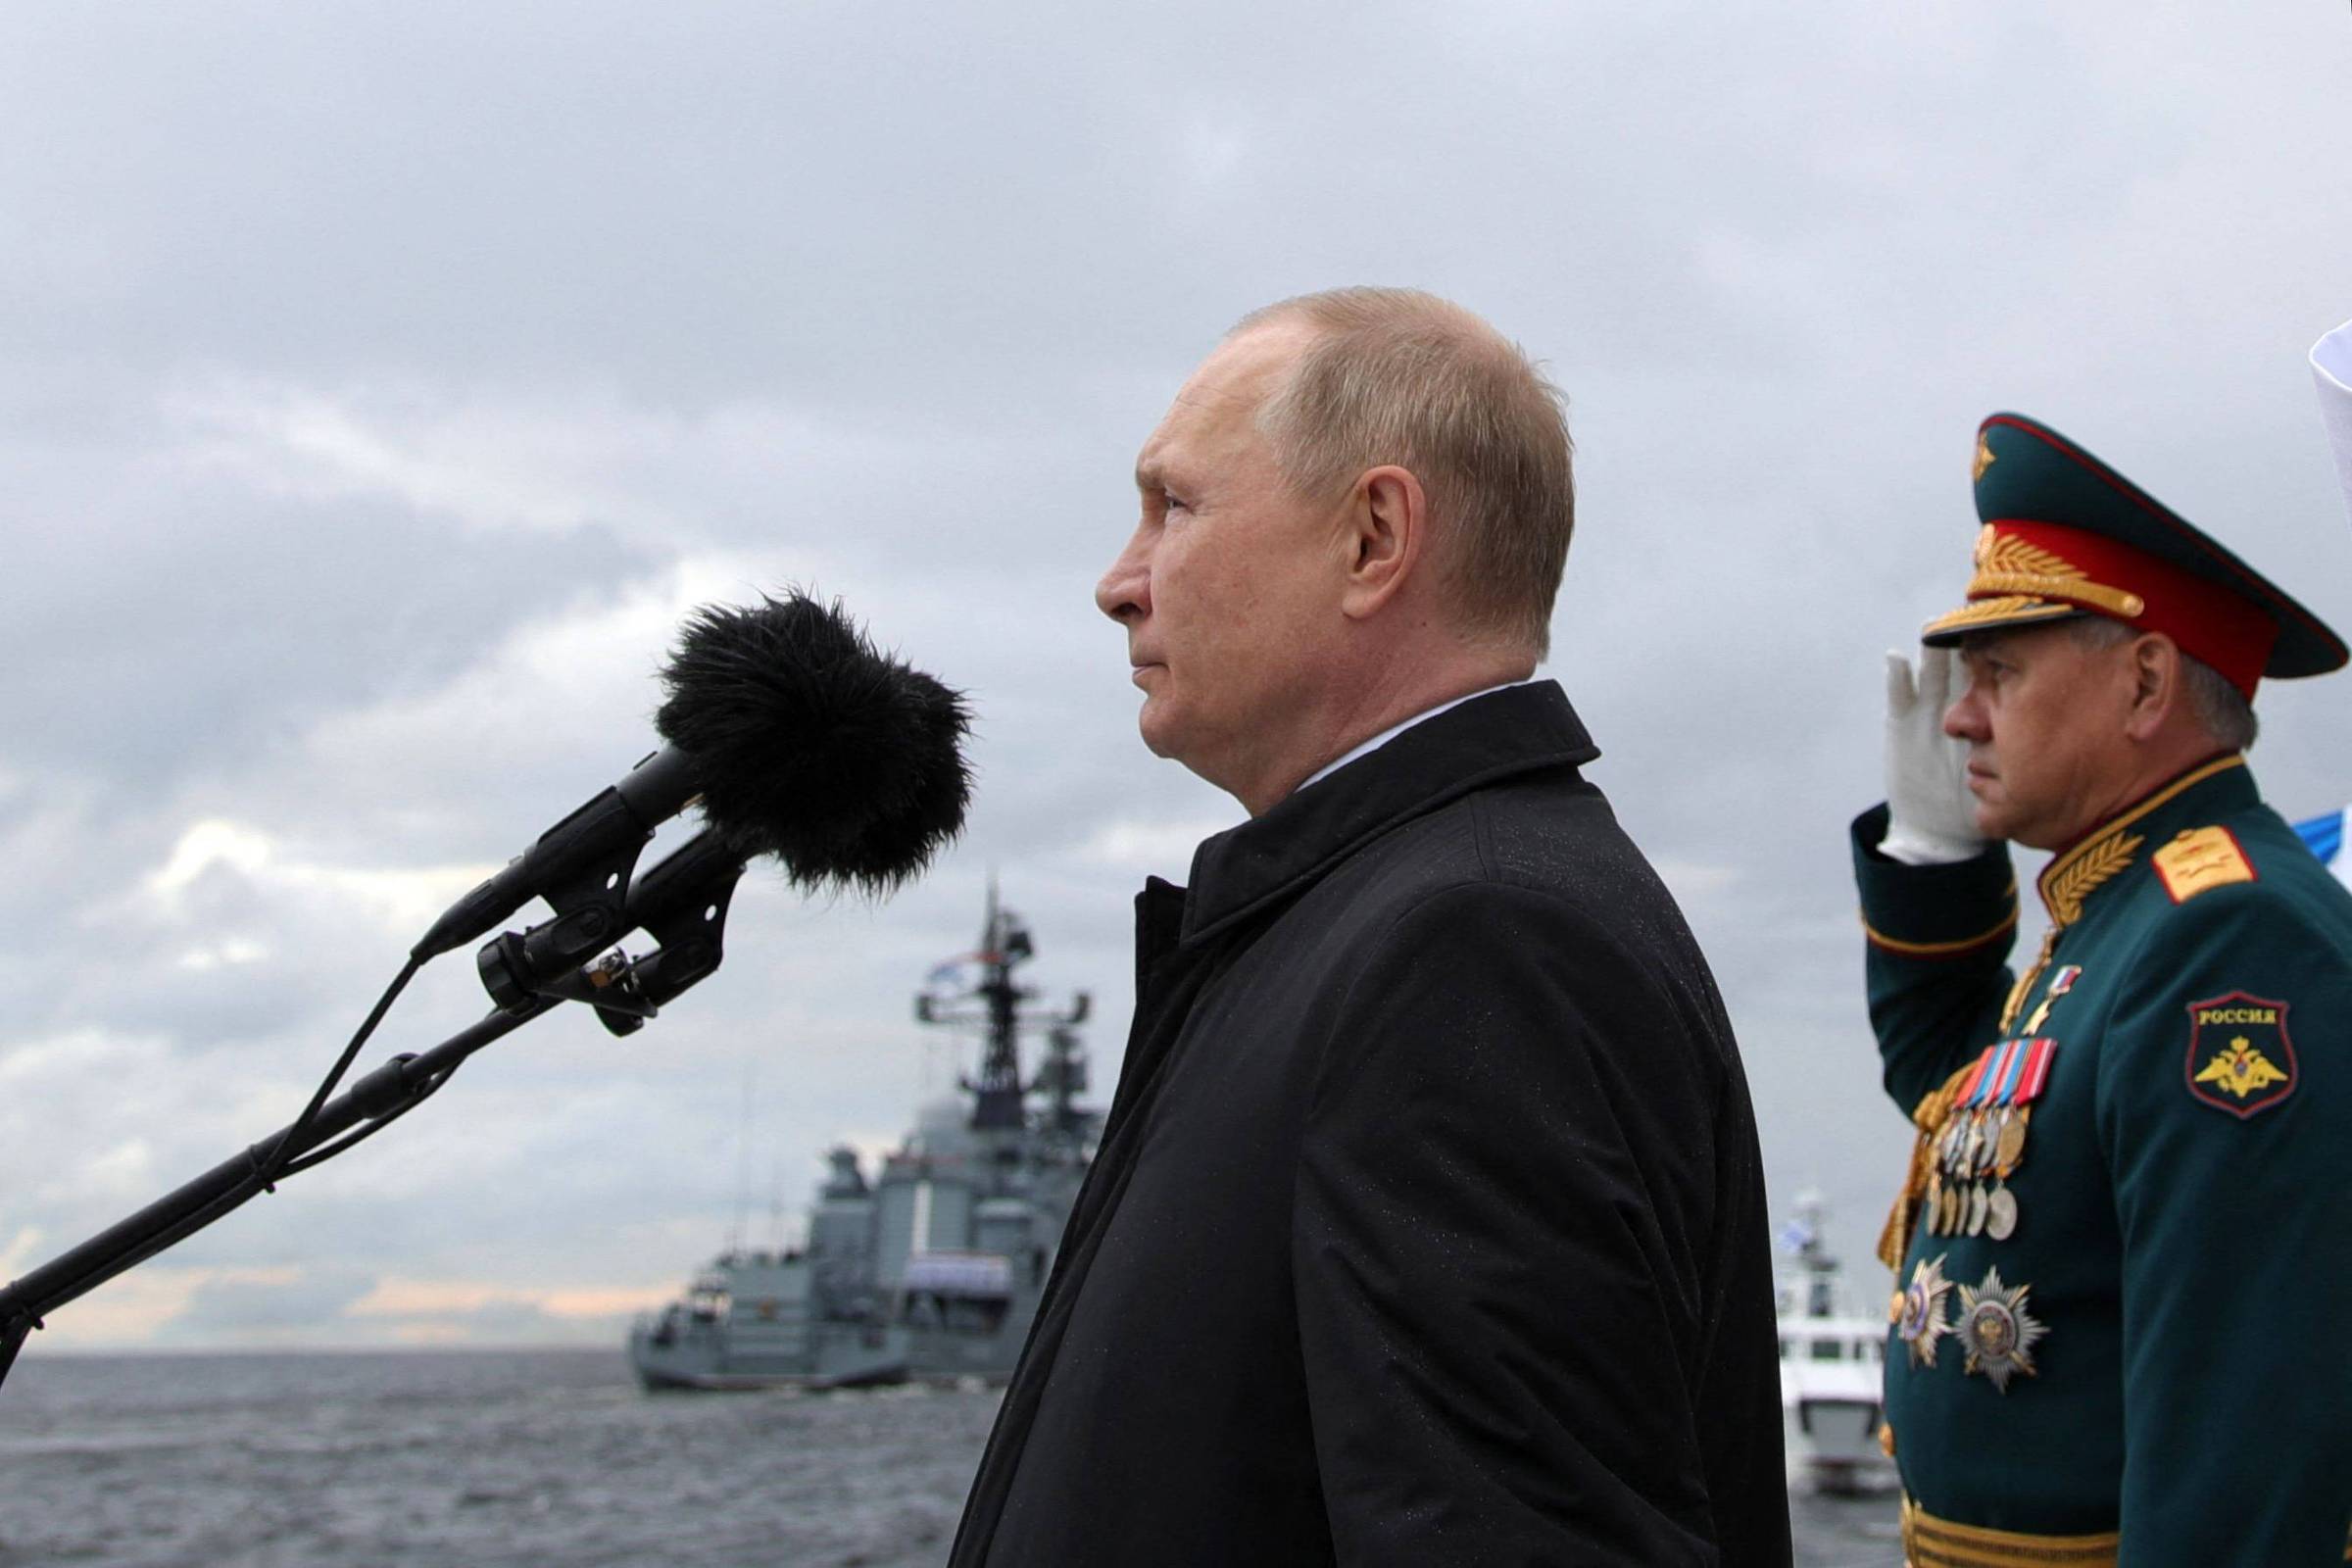 Putin aprova a Nova Doutrina de Política Externa da Rússia